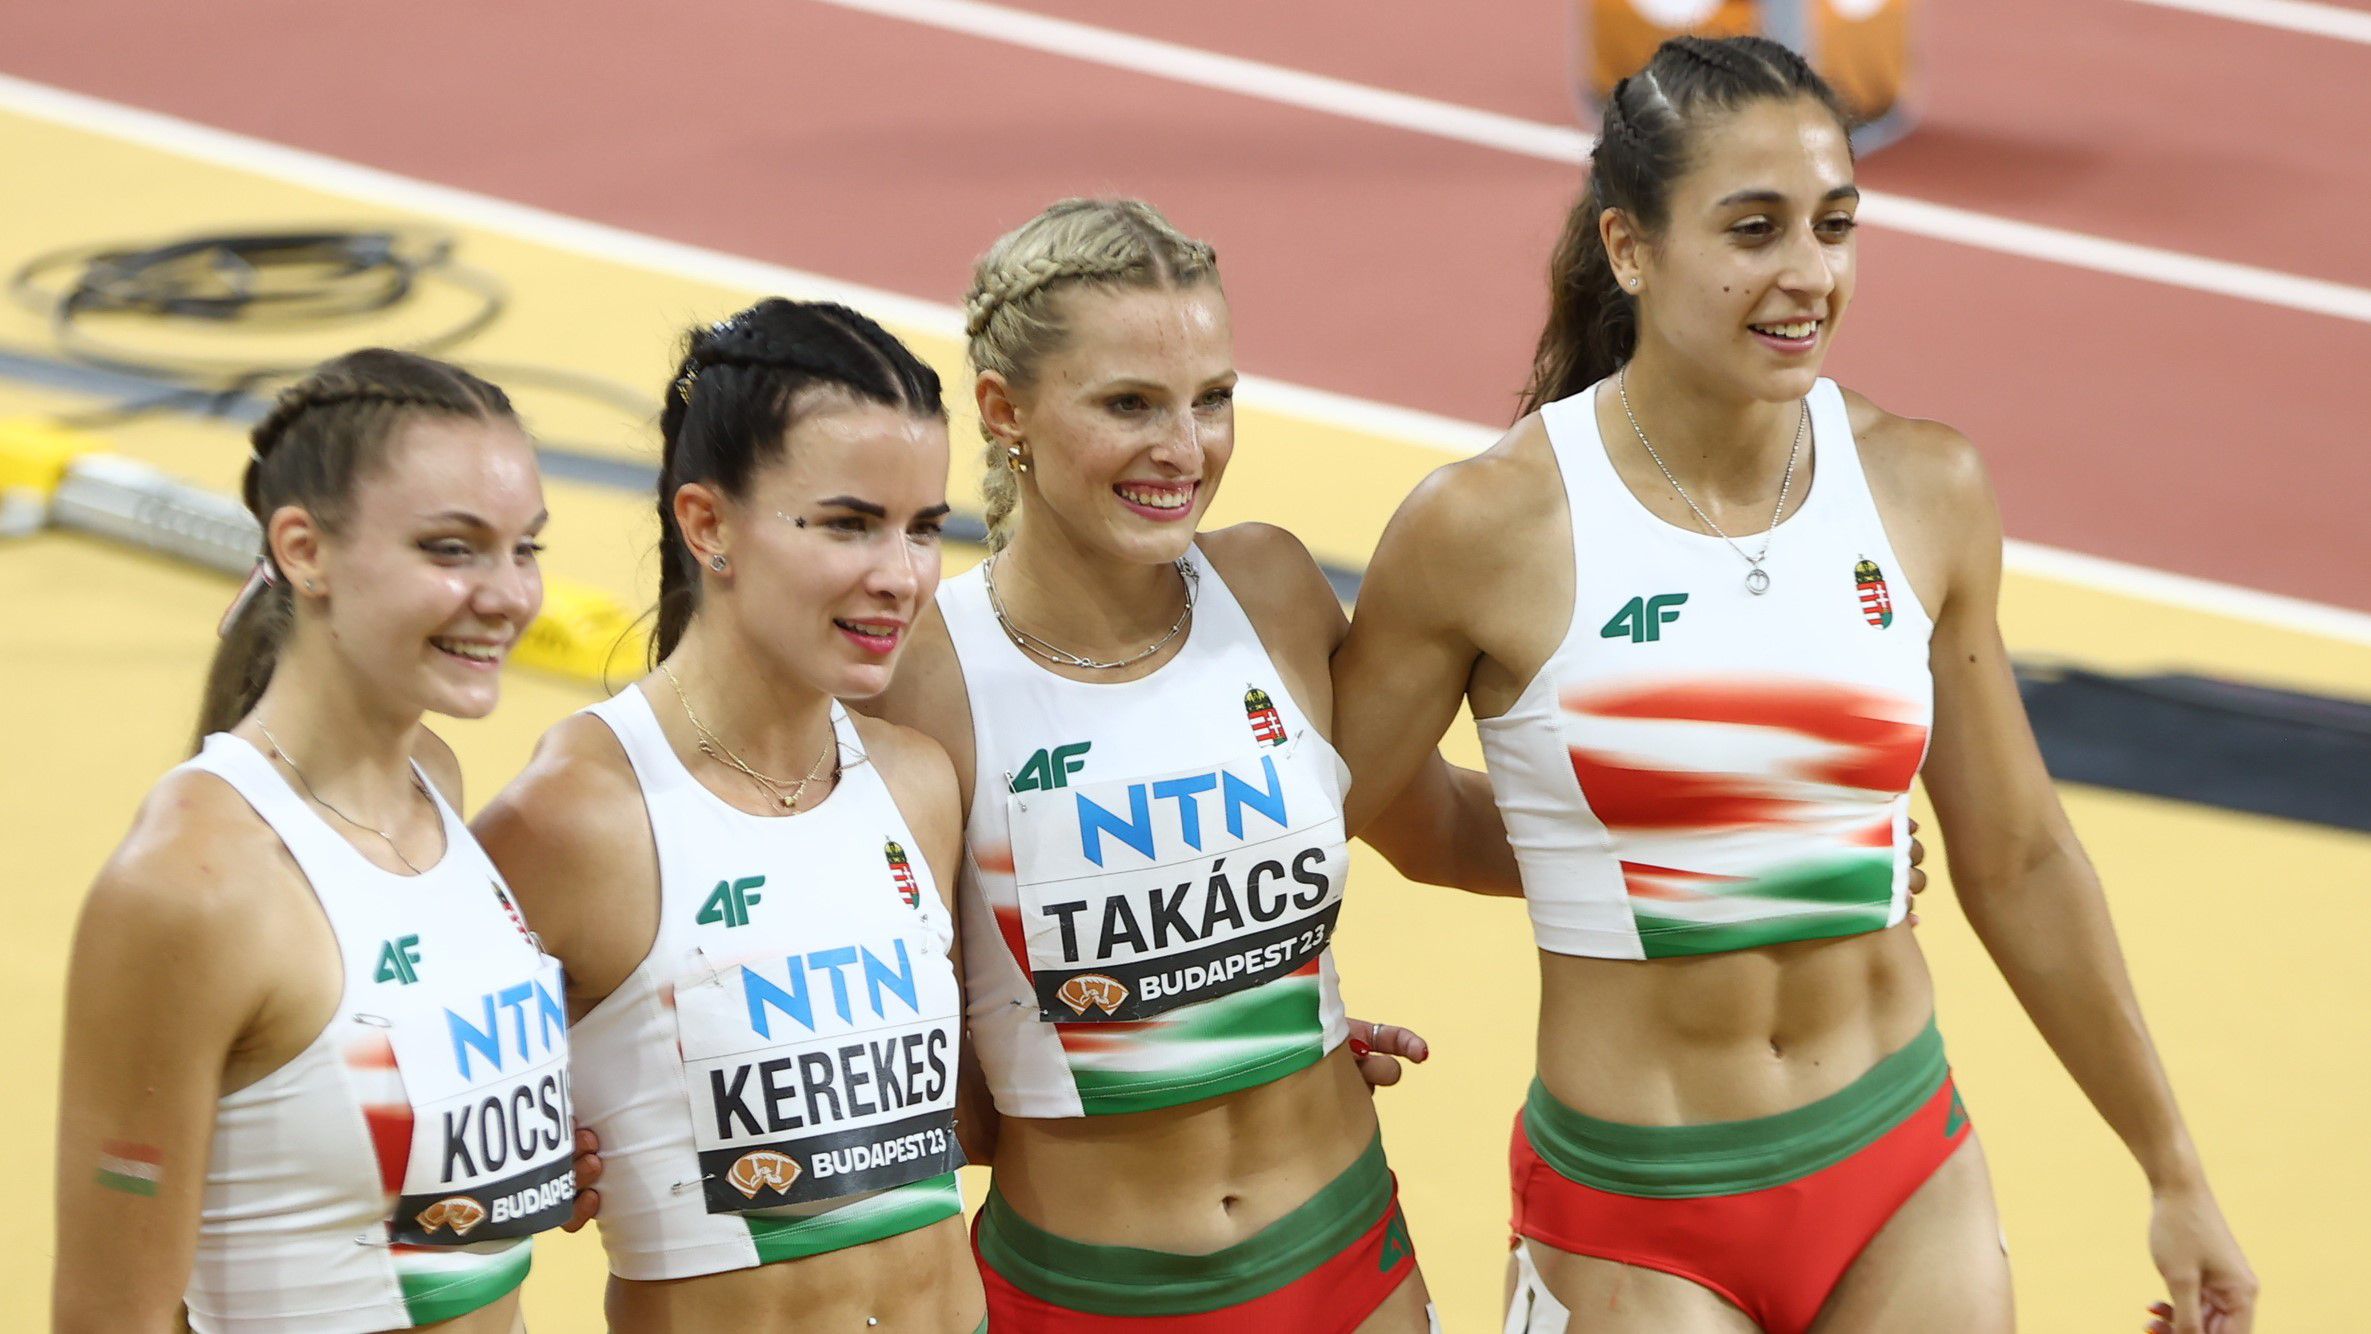 Kocsis Anna Luca, Kerekes Gréta, Takács Boglárka, Csóti Jusztina. A budapesti világbajnokságon ez a négy lány futott a 4x100 méter előfutamában (Fotó: Pozsonyi Zita)